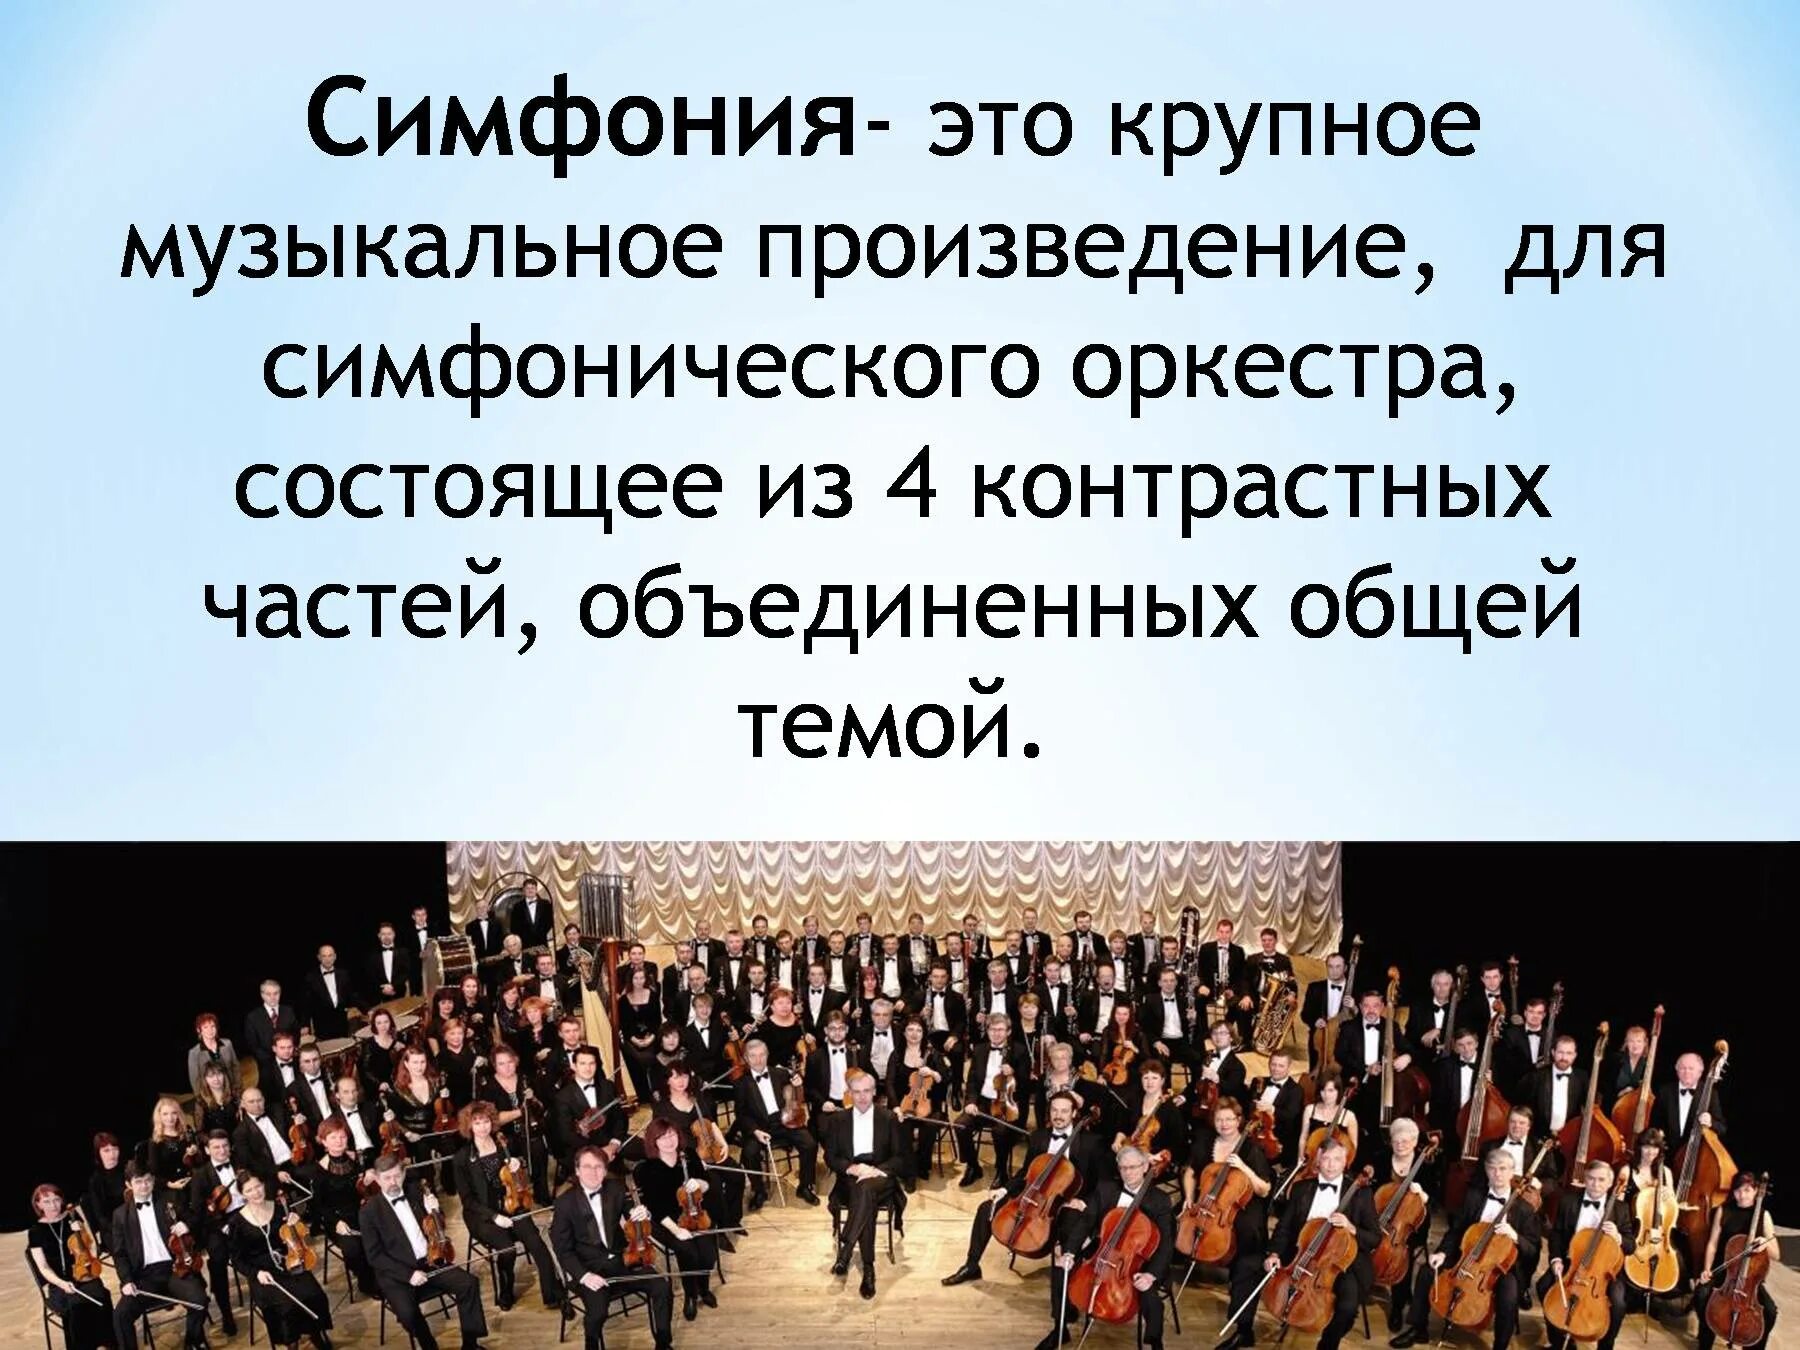 Части симфонического произведения. Симфония. Произведения для симфонического оркестра. Симфония-это музыкальное произведение. Музыкальное произведение для симфонического оркестра.